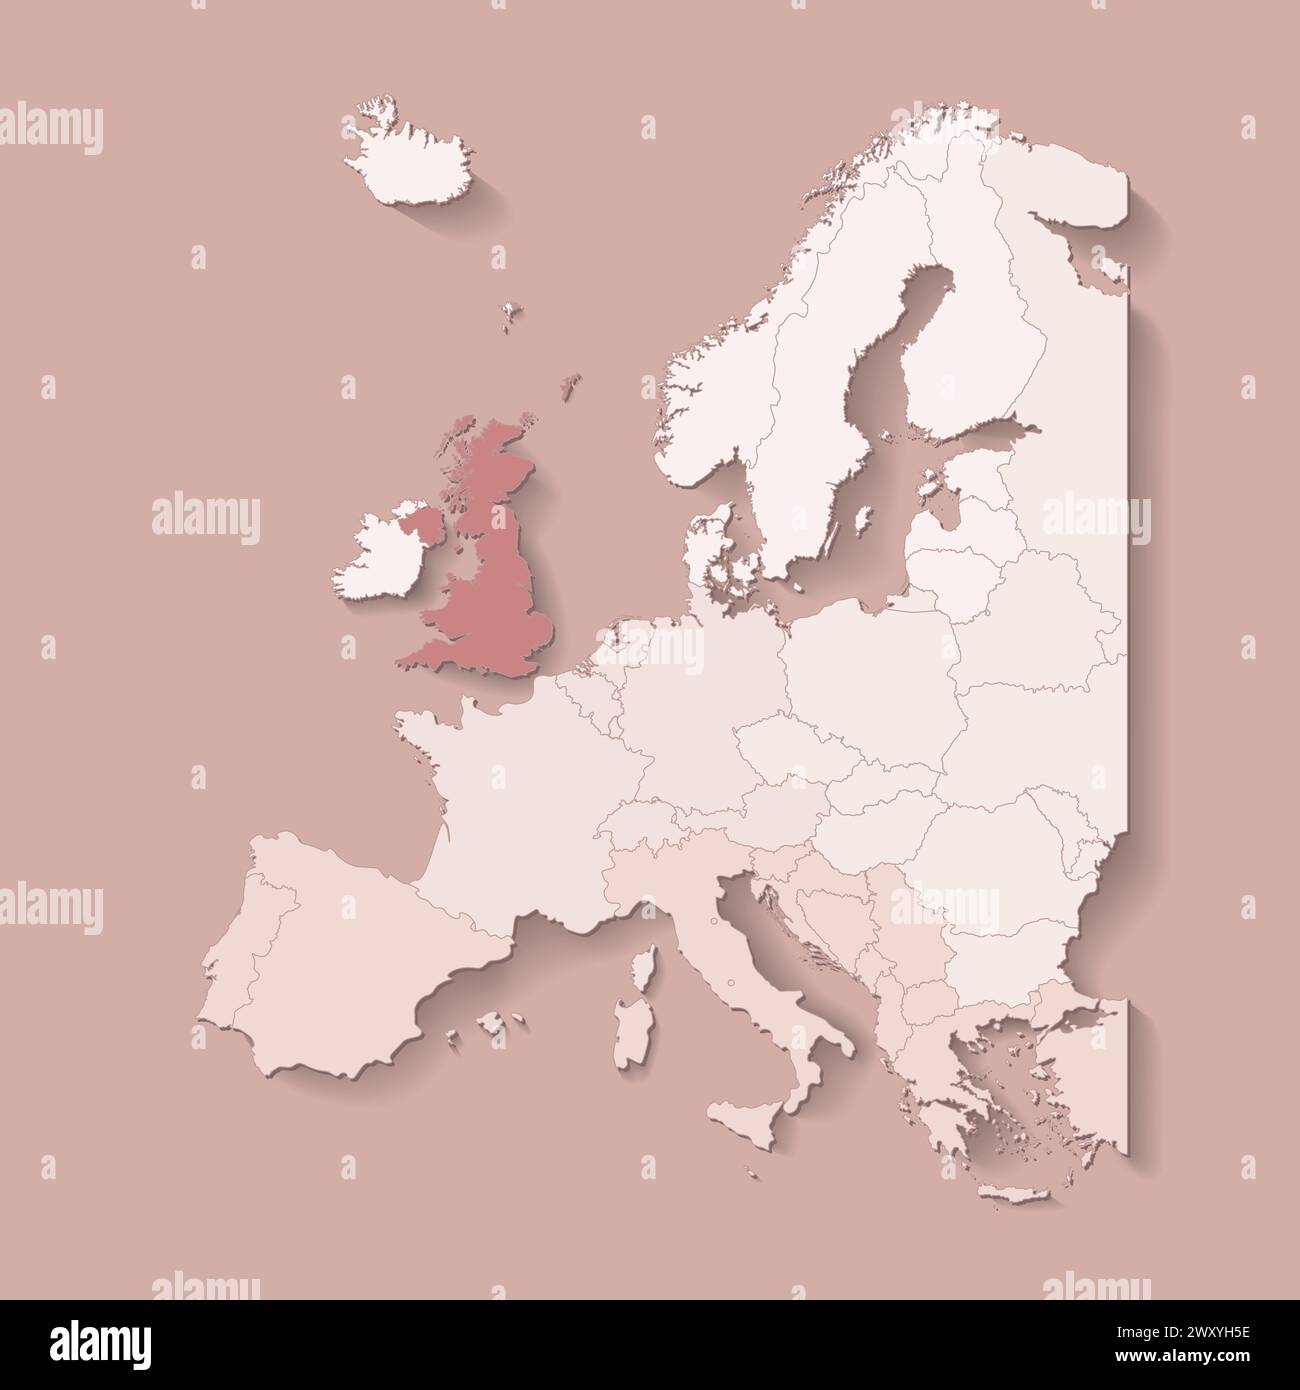 Illustrazione vettoriale con terra europea con confini di stati e paese contrassegnato Regno Unito. Mappa politica del Regno Unito di colore marrone con occidentale, sud Illustrazione Vettoriale